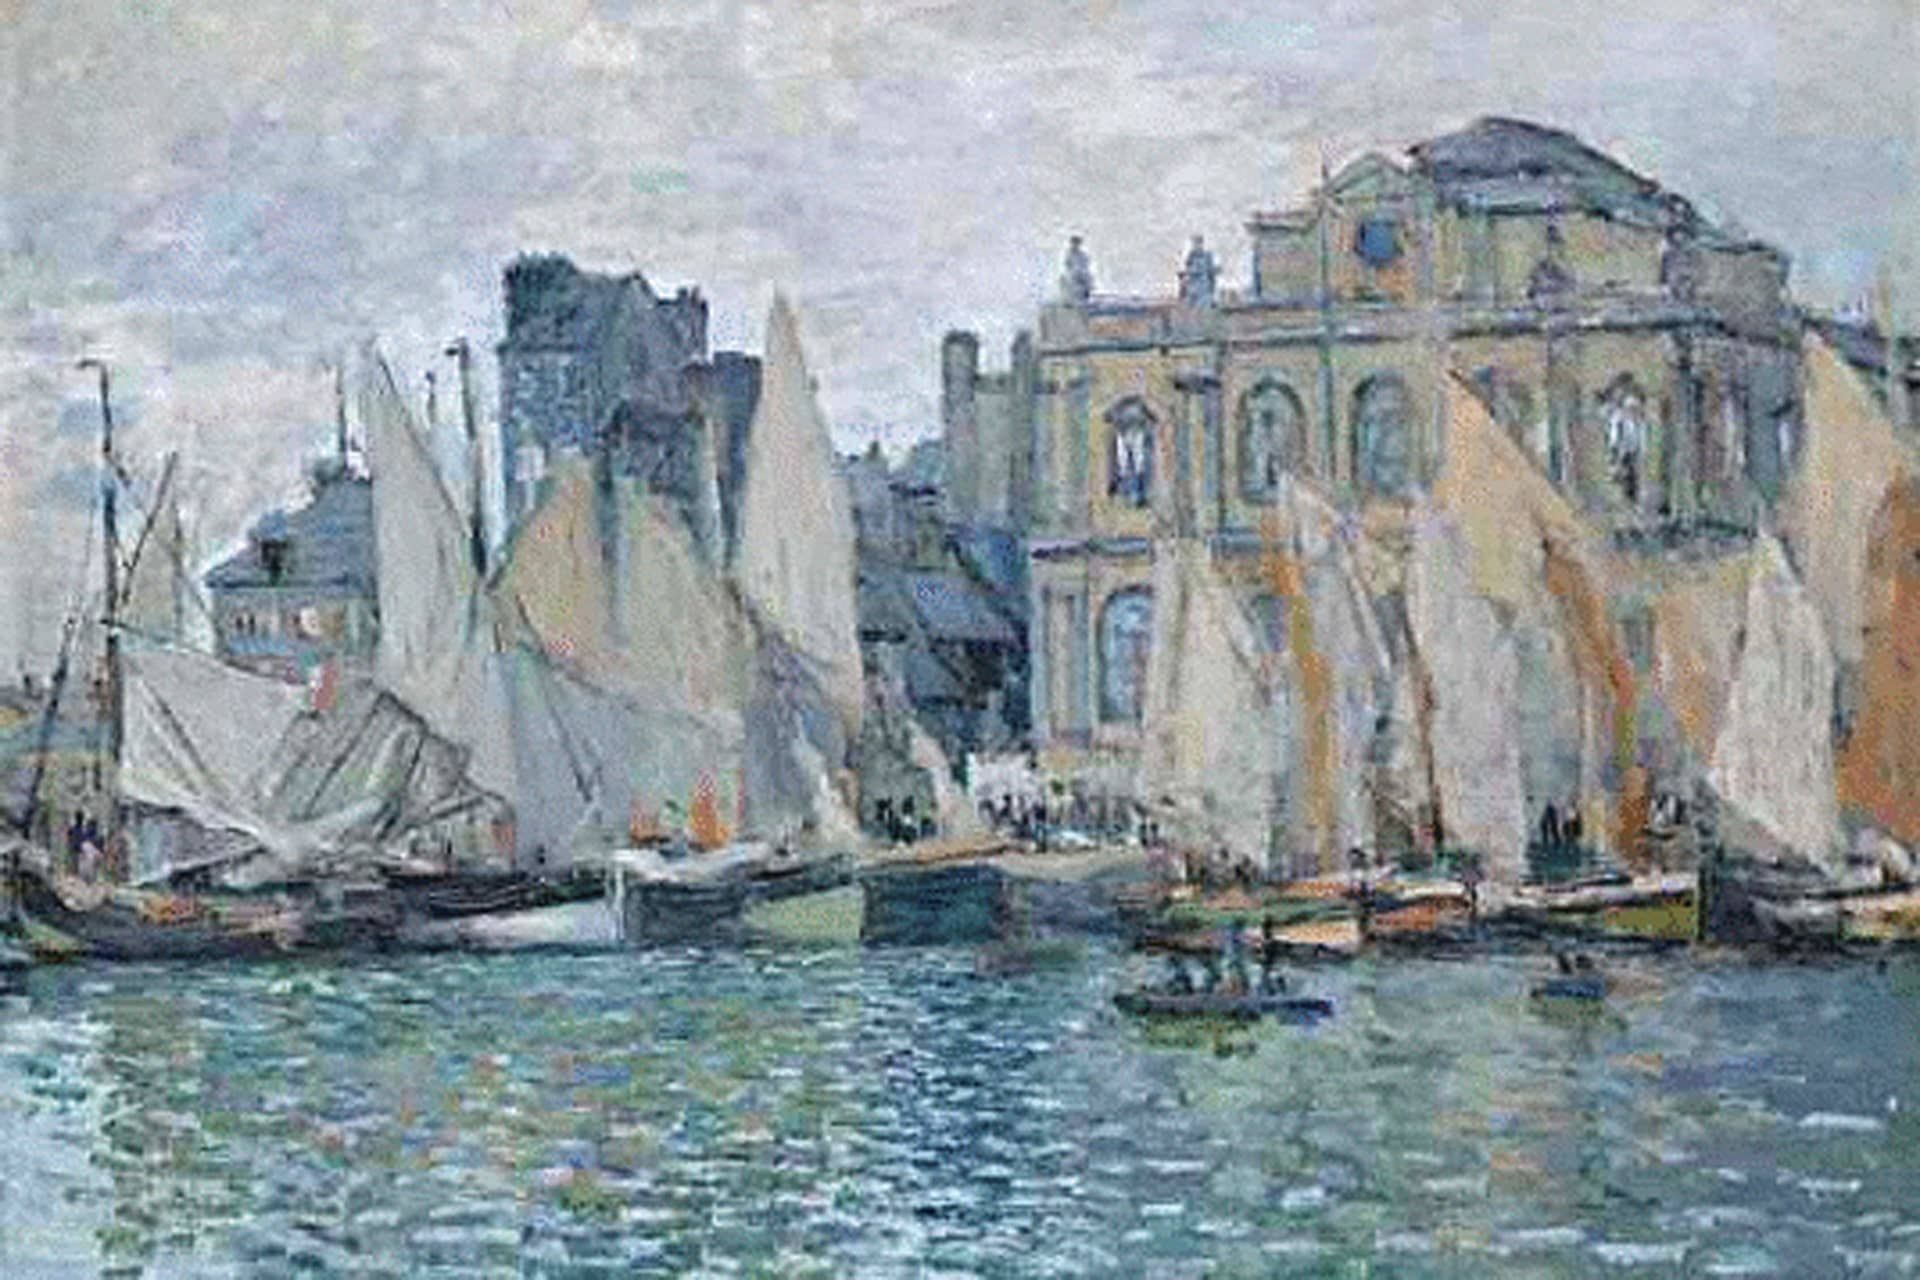 De weg van Monet i.s.m. Vrije Academie